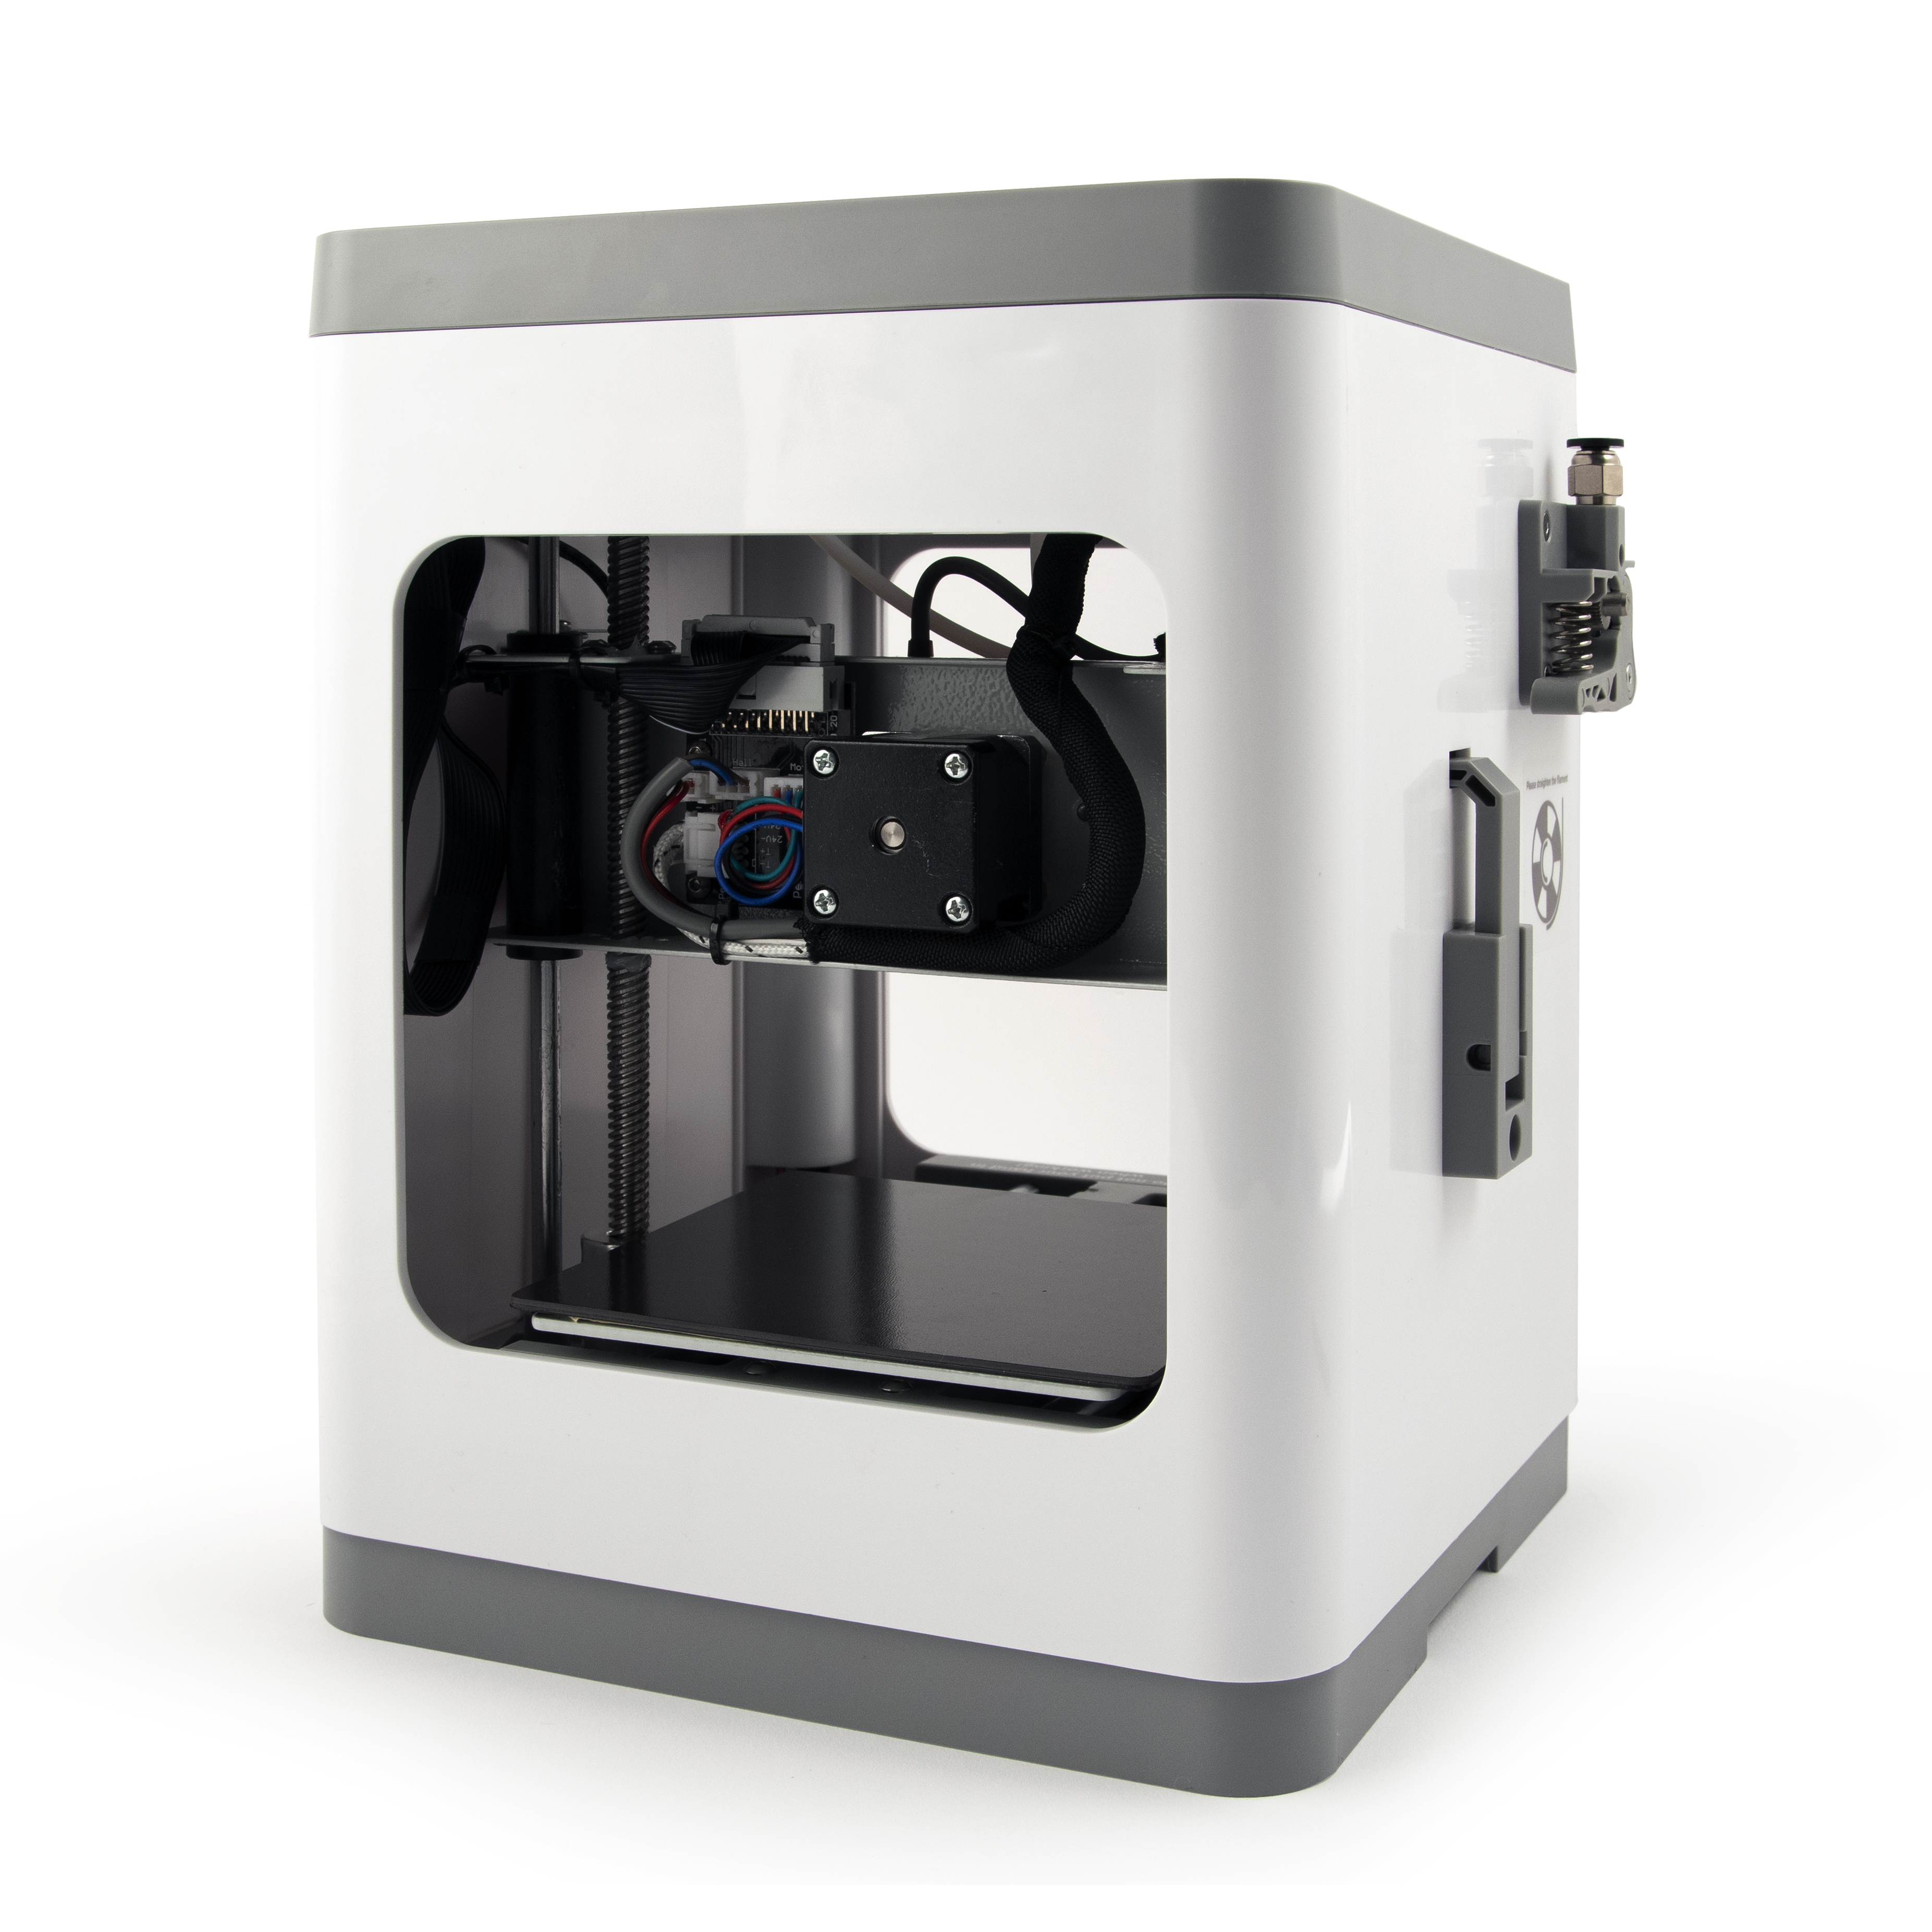 Gembird Gemma stampante 3D Fabbricazione a Fusione di Filamento (FFF) [3DP-GEMMA]